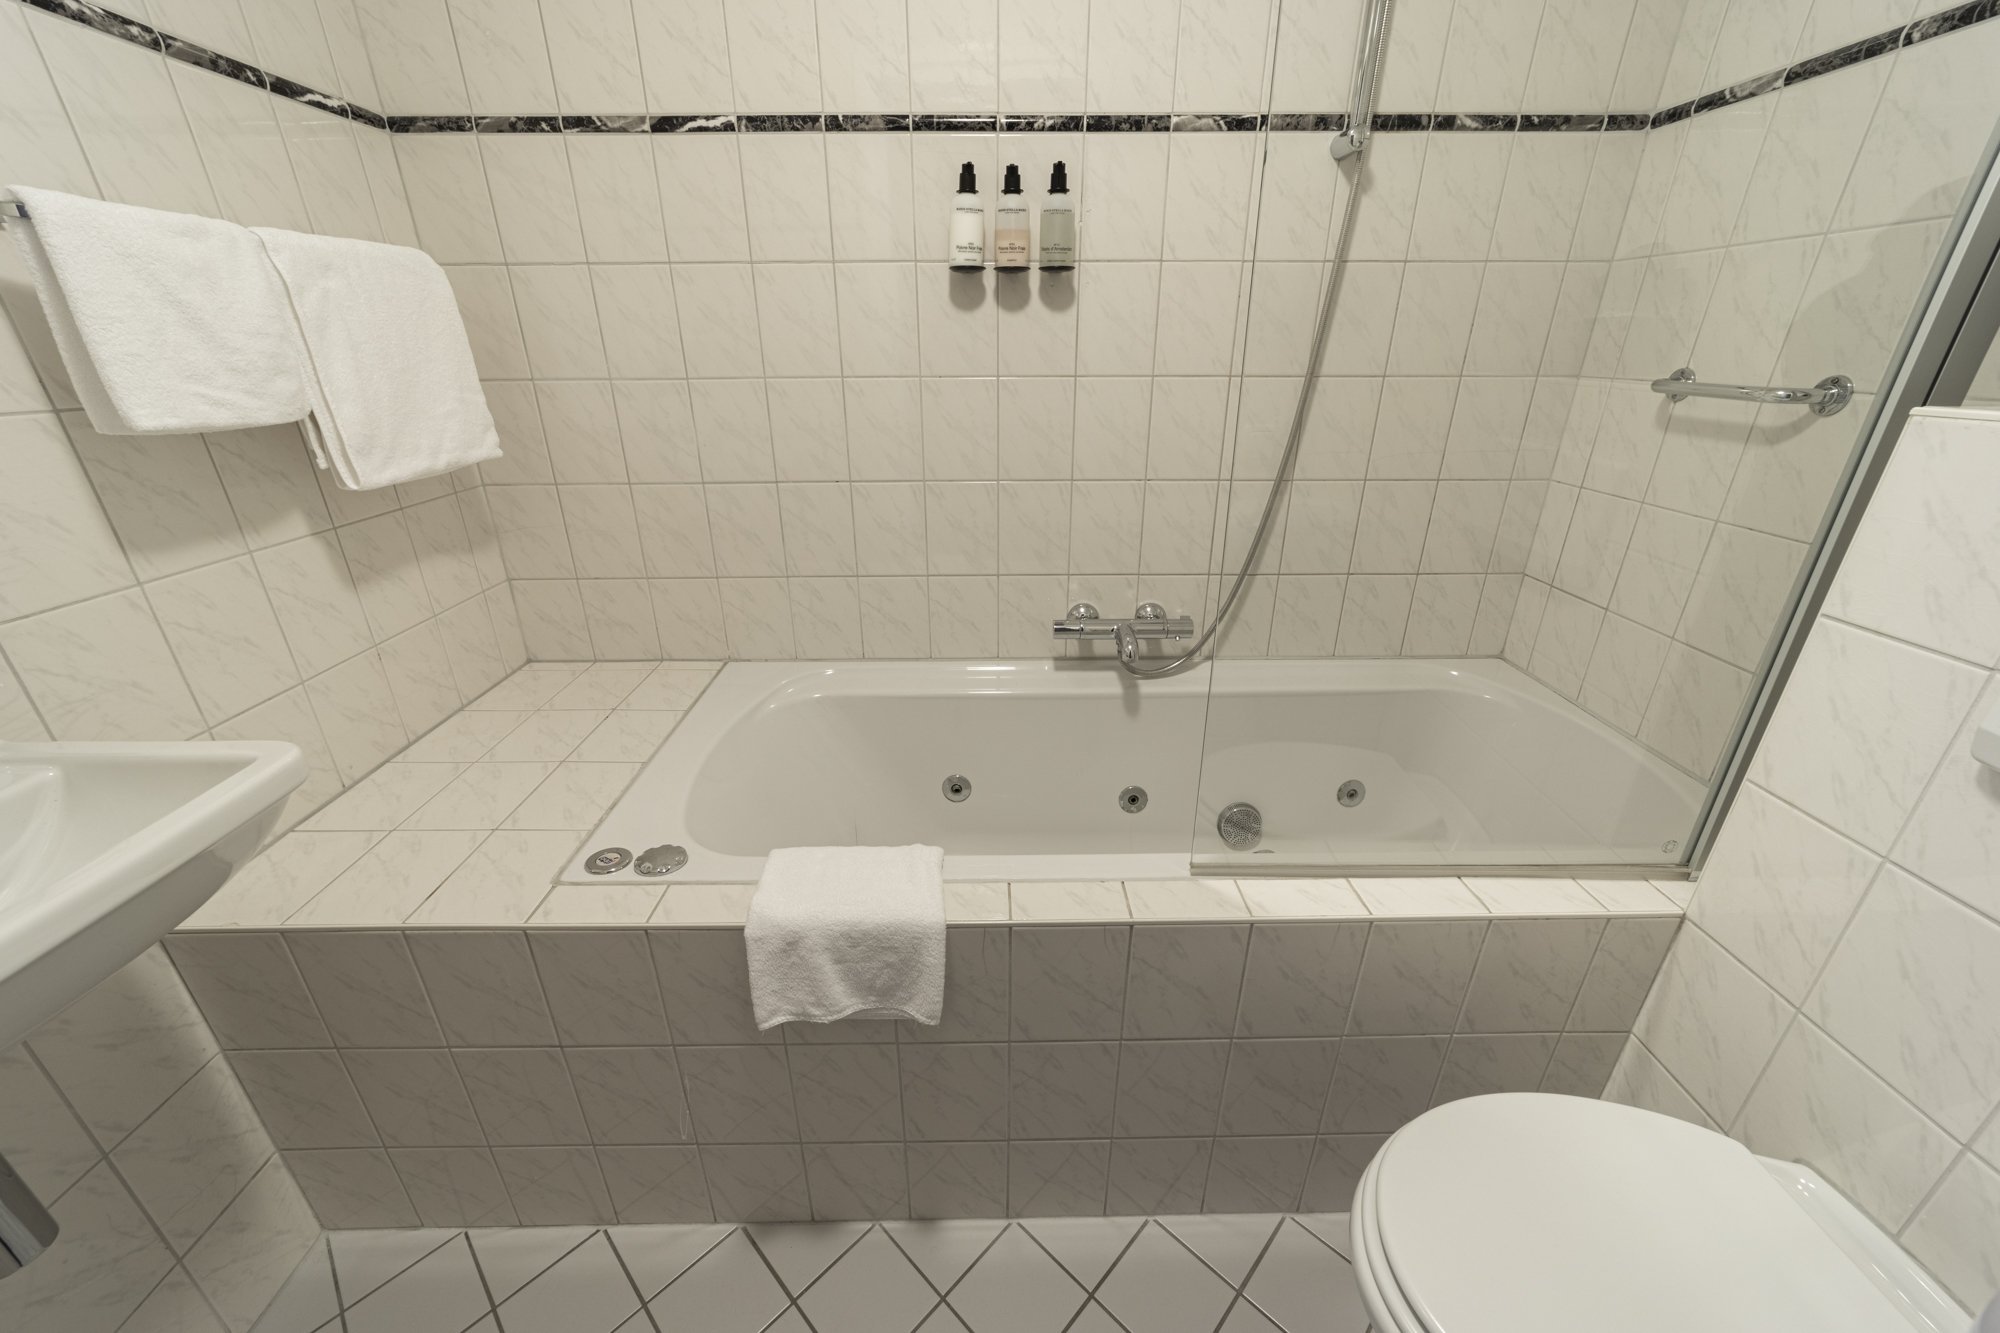 Strandhotel-Camperduin-ein-Polder-Badezimmer-6-w.jpg